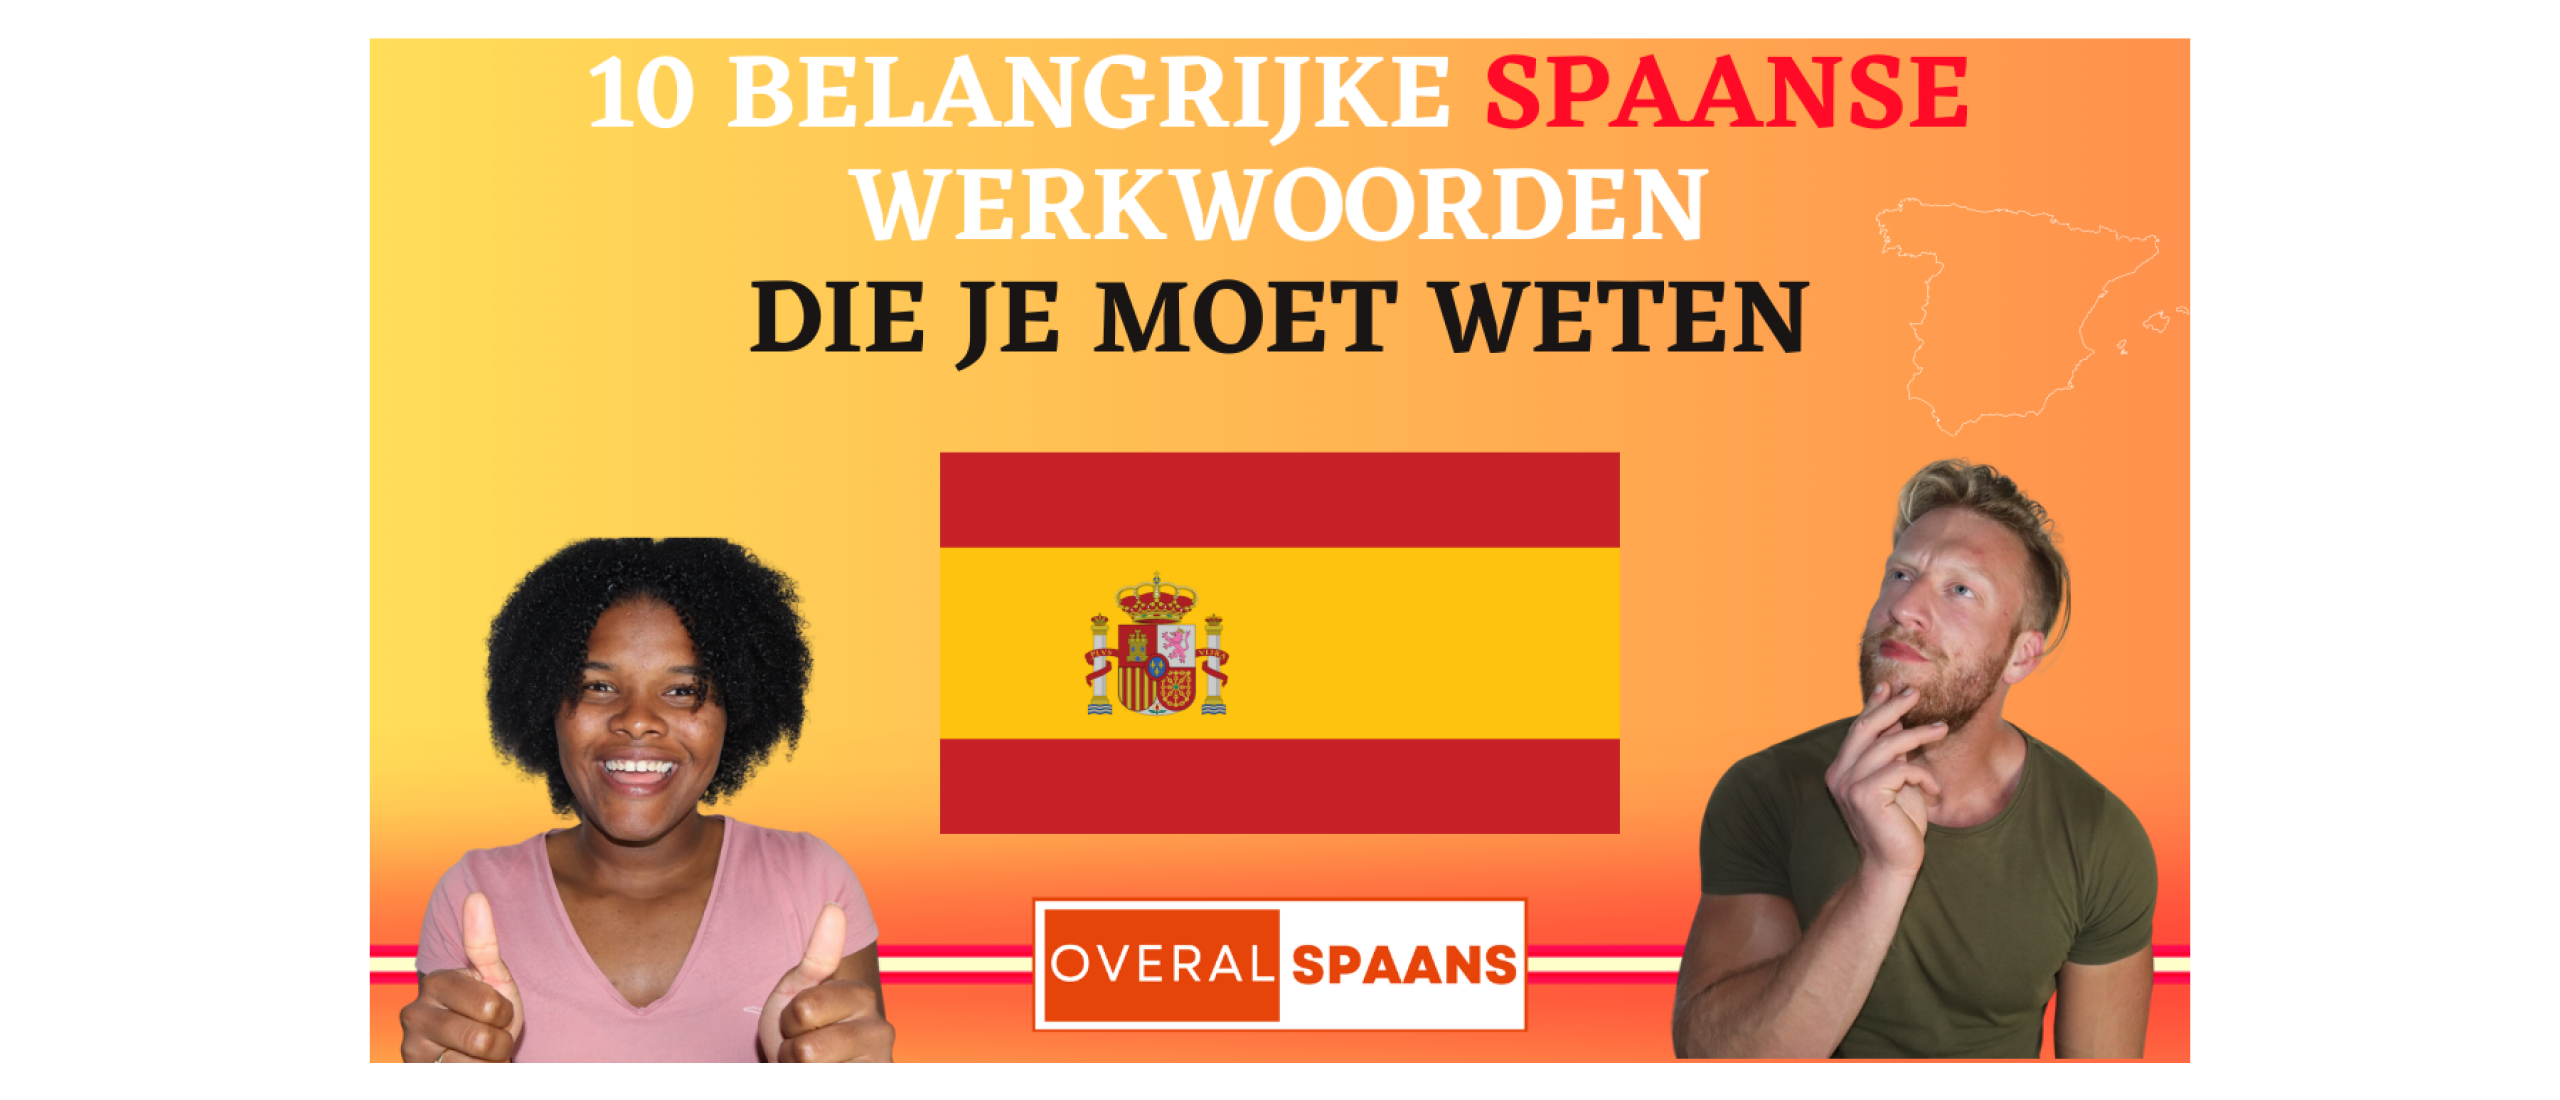 Spaanse werkwoorden | 10 veelgebruikte Spaanse werkwoorden